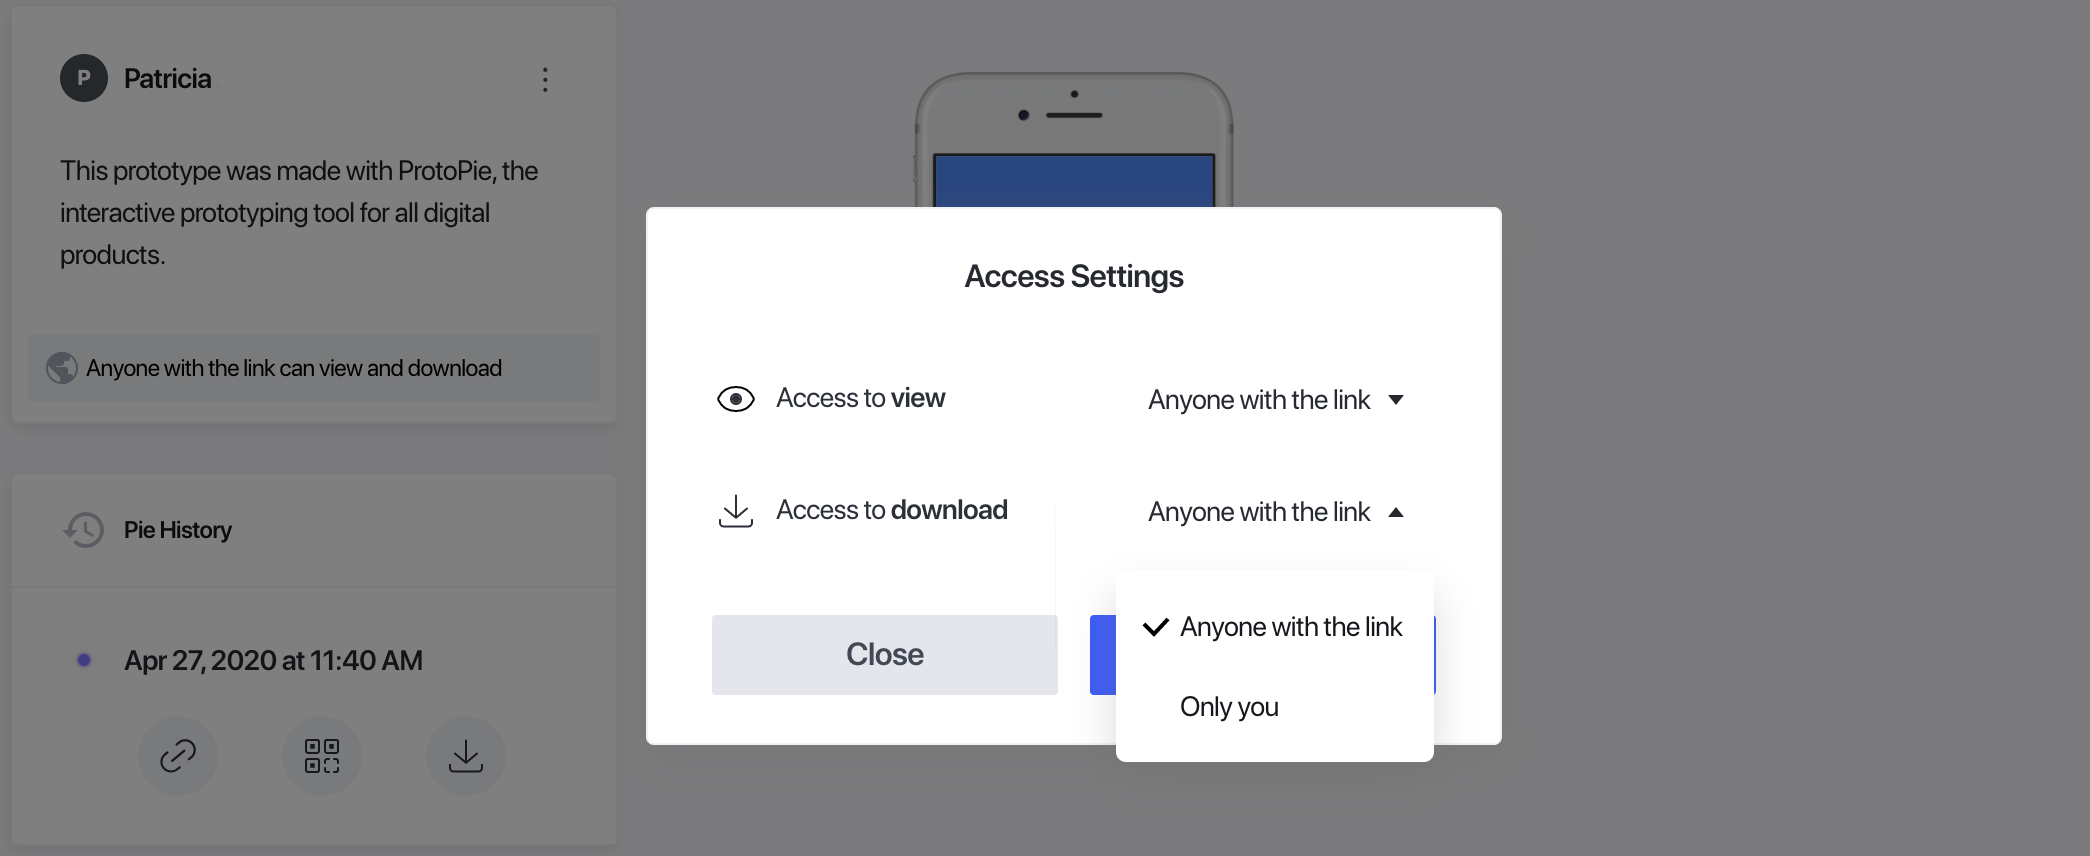 access-settings